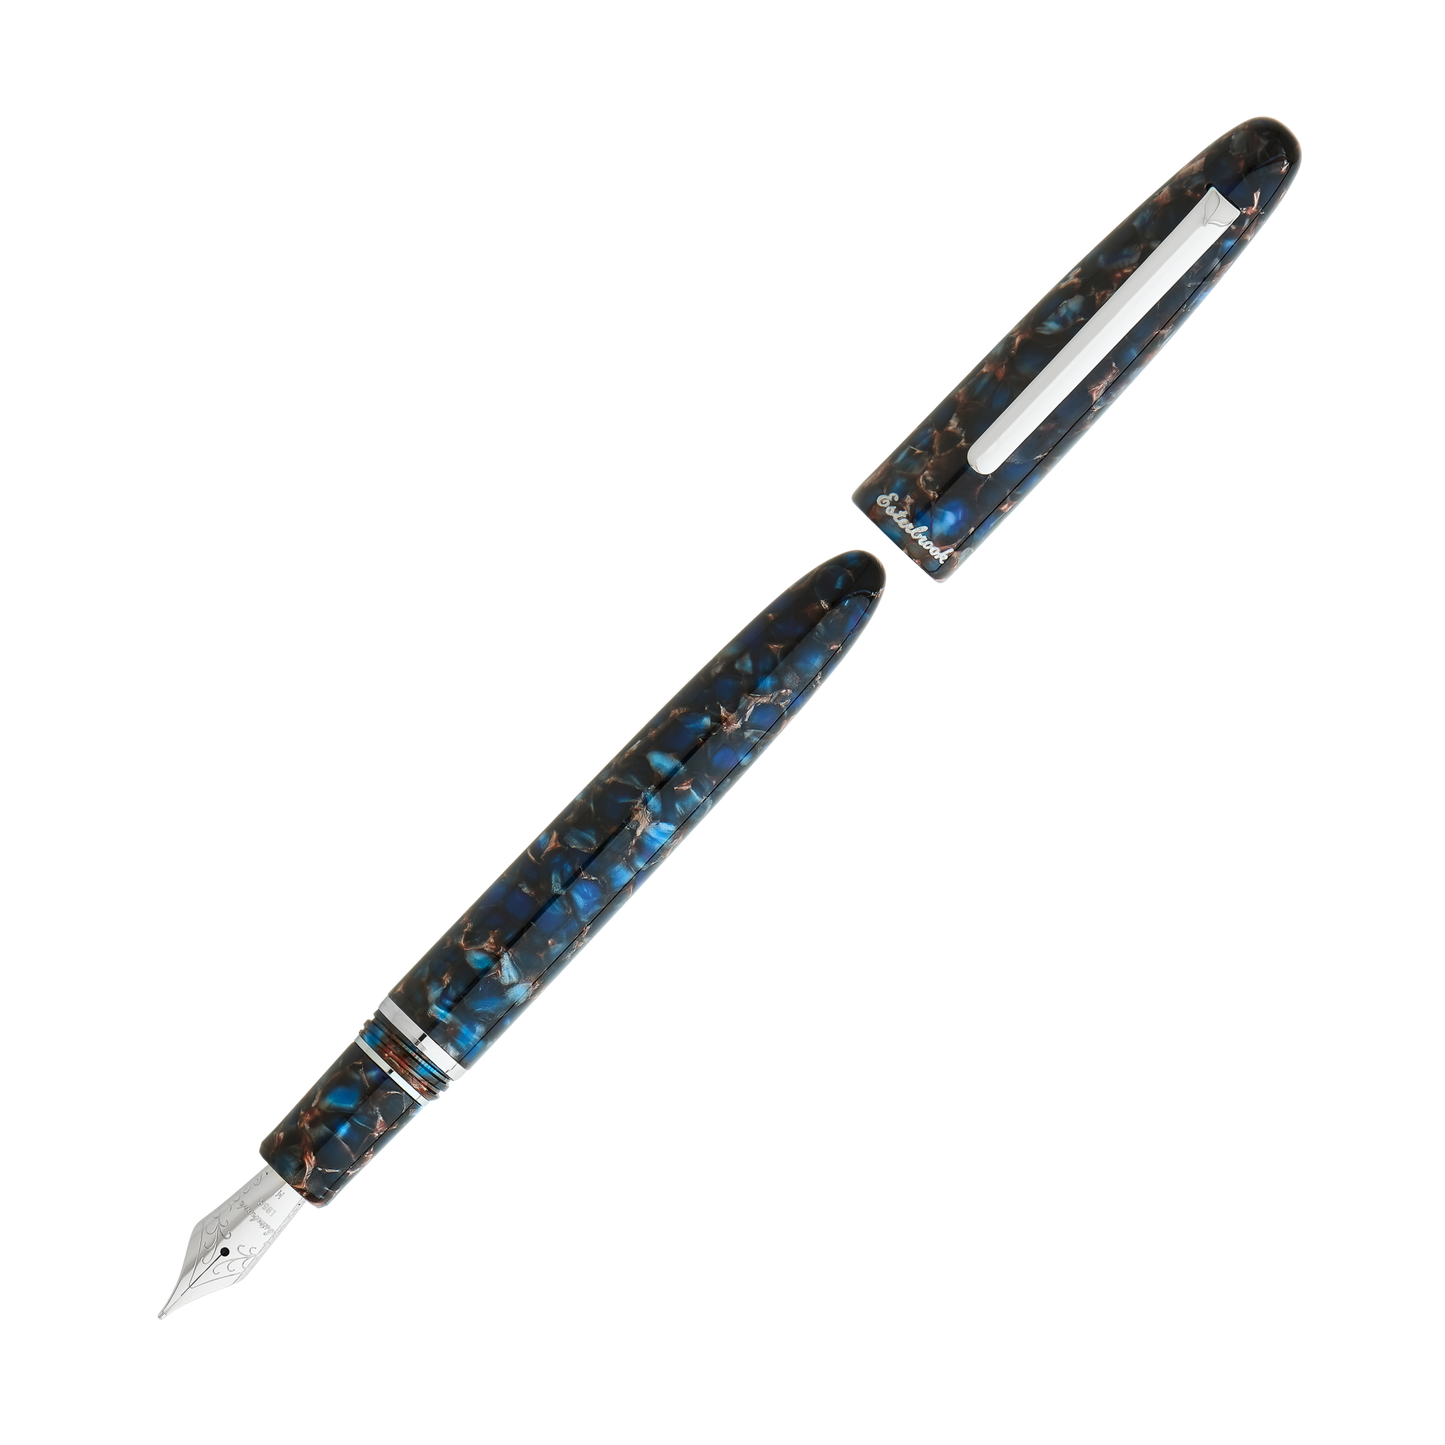 Esterbrook Estie Fountain Pen - Nouveau Bleu with Palladium Trim